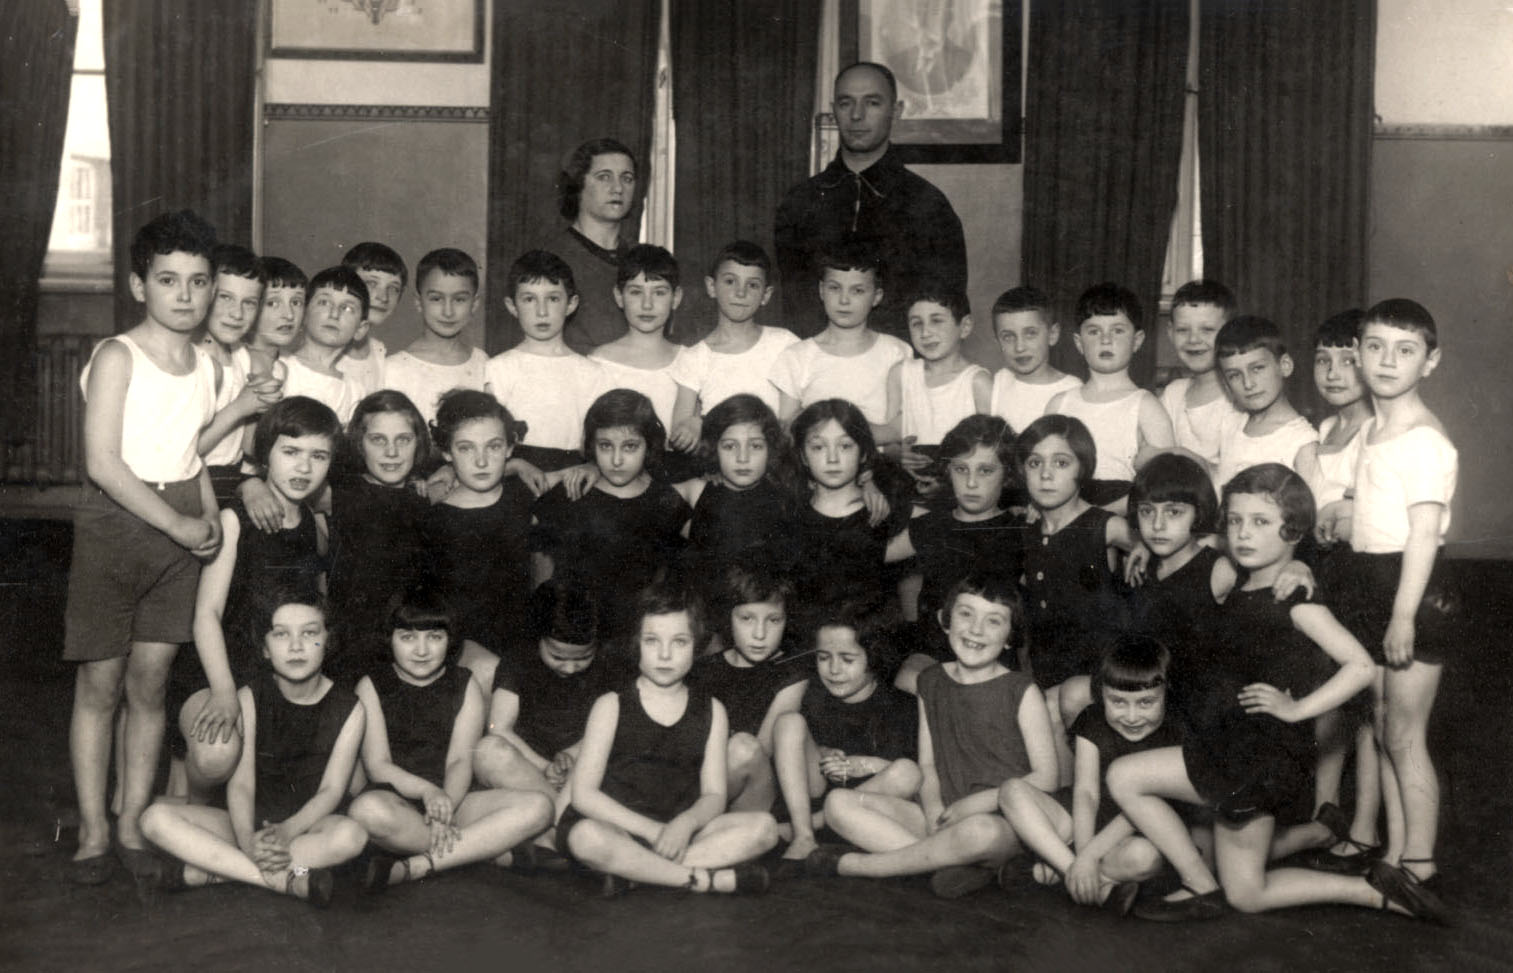 Riga, Letonia. Foto grupal de la "Mejiná" (preparatorio) B en una clase de educación física, 1933